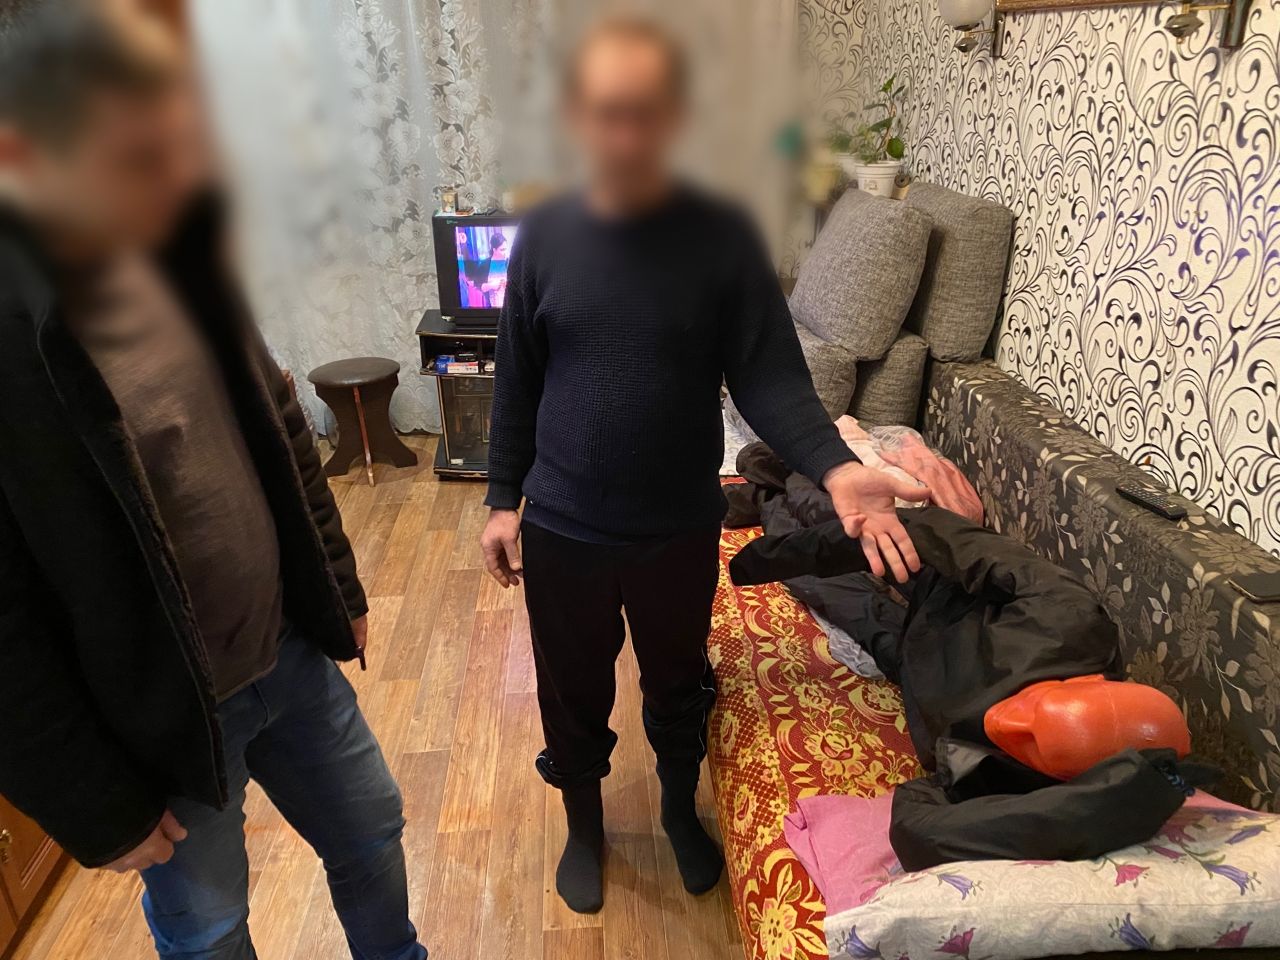 В  Кузнецке мужчина расправился с сожителем дочери и прикрыл его ковром 